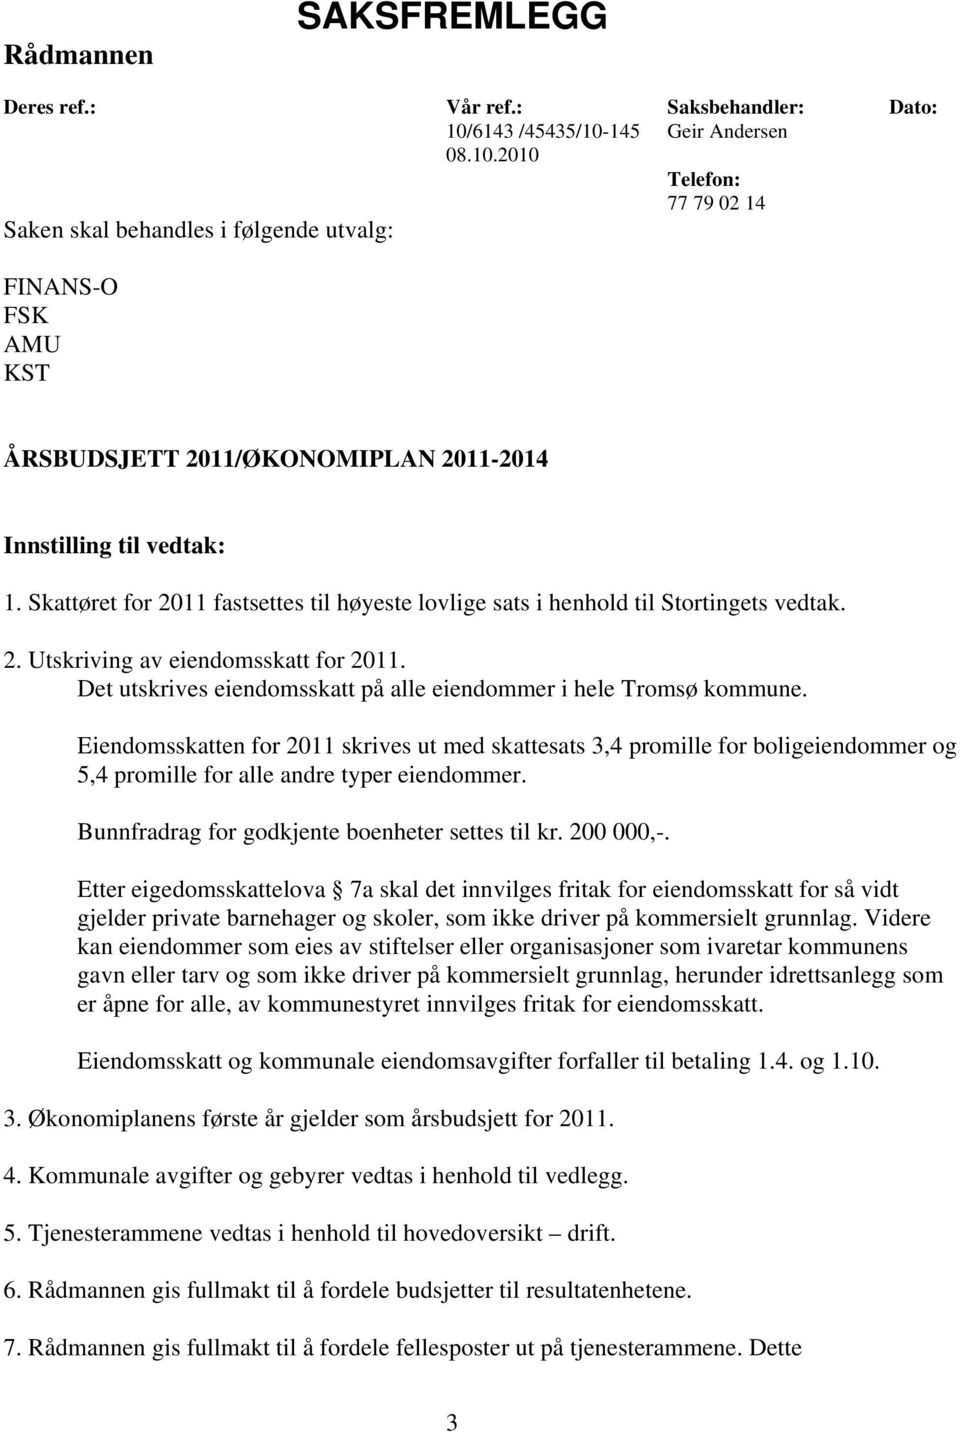 Skattøret for 2011 fastsettes til høyeste lovlige sats i henhold til Stortingets vedtak. 2. Utskriving av eiendomsskatt for 2011. Det utskrives eiendomsskatt på alle eiendommer i hele Tromsø kommune.